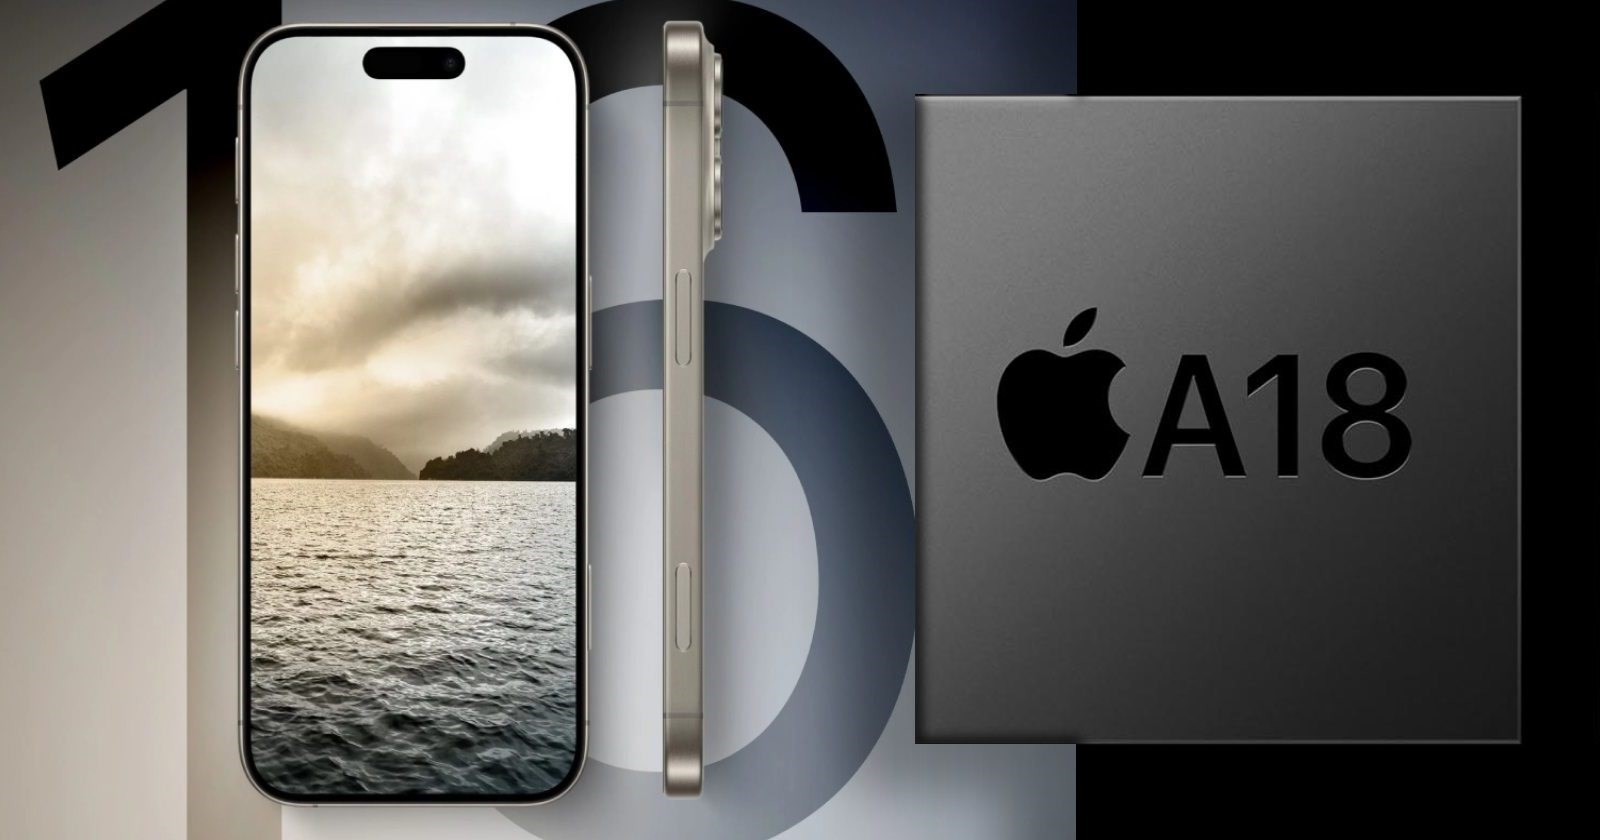 Apple A18 Pro'nun teknik ayrıntıları paylaşıldı: Benzer tasarımda